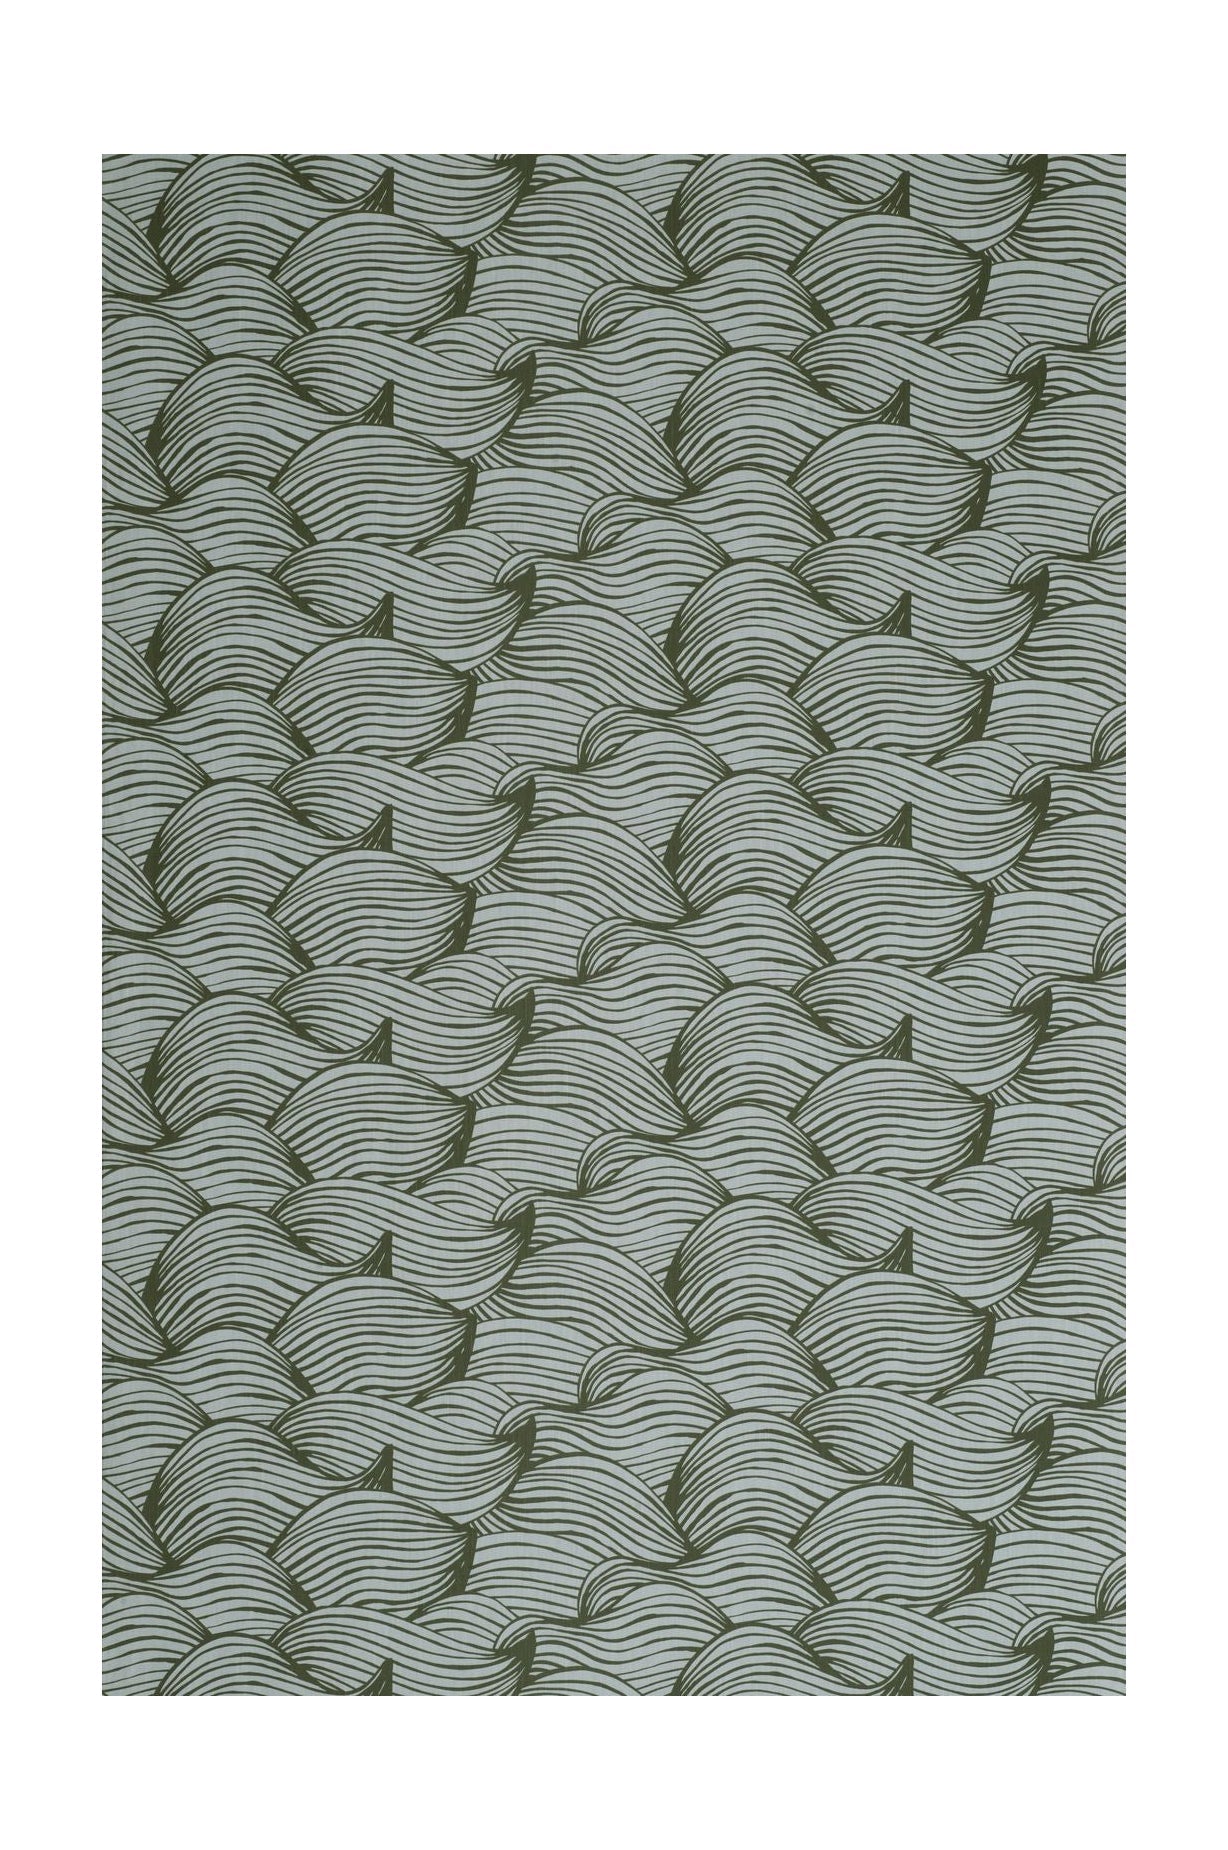 Largeur du tissu Spira Wave 150 cm (prix par mètre), vert